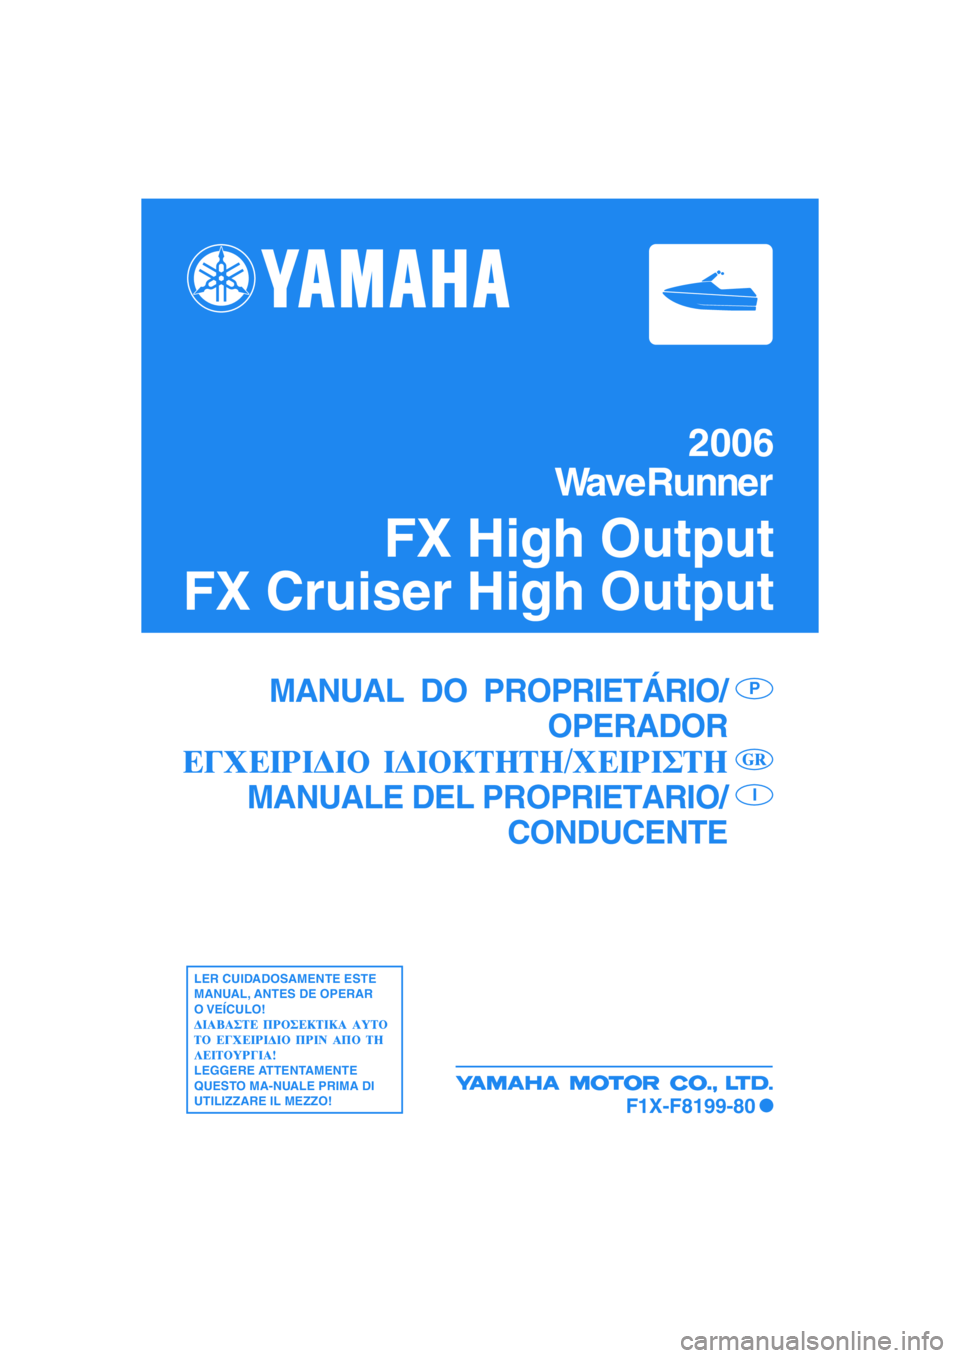 YAMAHA FX HO 2006  ΟΔΗΓΌΣ ΧΡΉΣΗΣ (in Greek) 2006
WaveRunner
FX High Output
FX Cruiser High Output
MANUAL  DO  PROPRIETÁRIO/
OPERADOR
MANUALE DEL PROPRIETARIO/
CONDUCENTEP
I
LER CUIDADOSAMENTE ESTE
MANUAL, ANTES DE OPERAR
O VEÍCULO!
LEGGERE AT